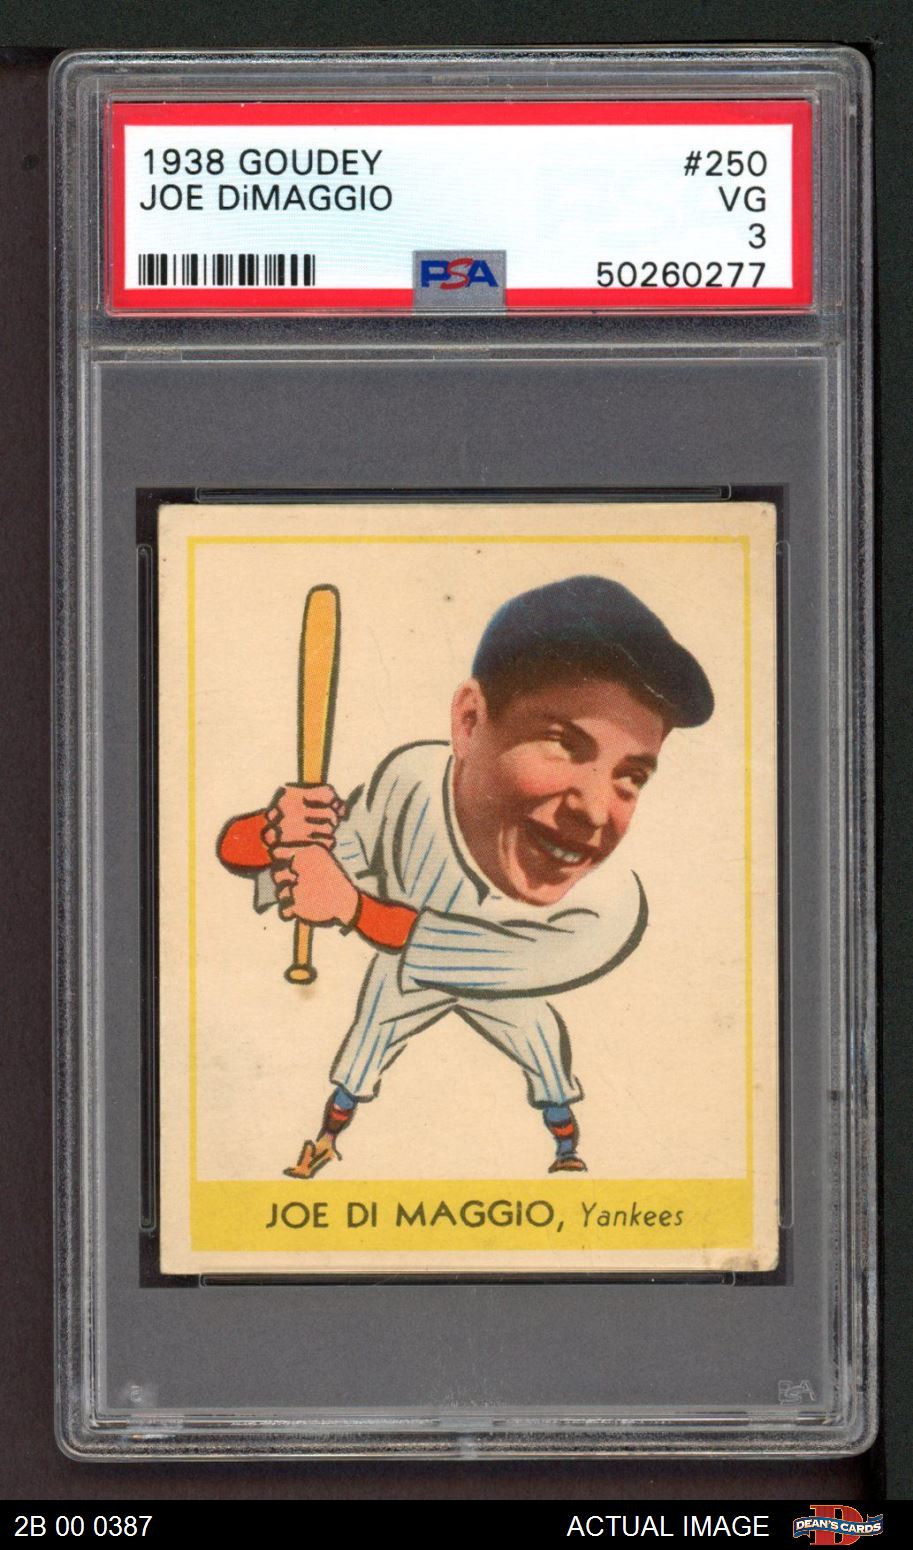 1938 Goudey Joe DiMaggio